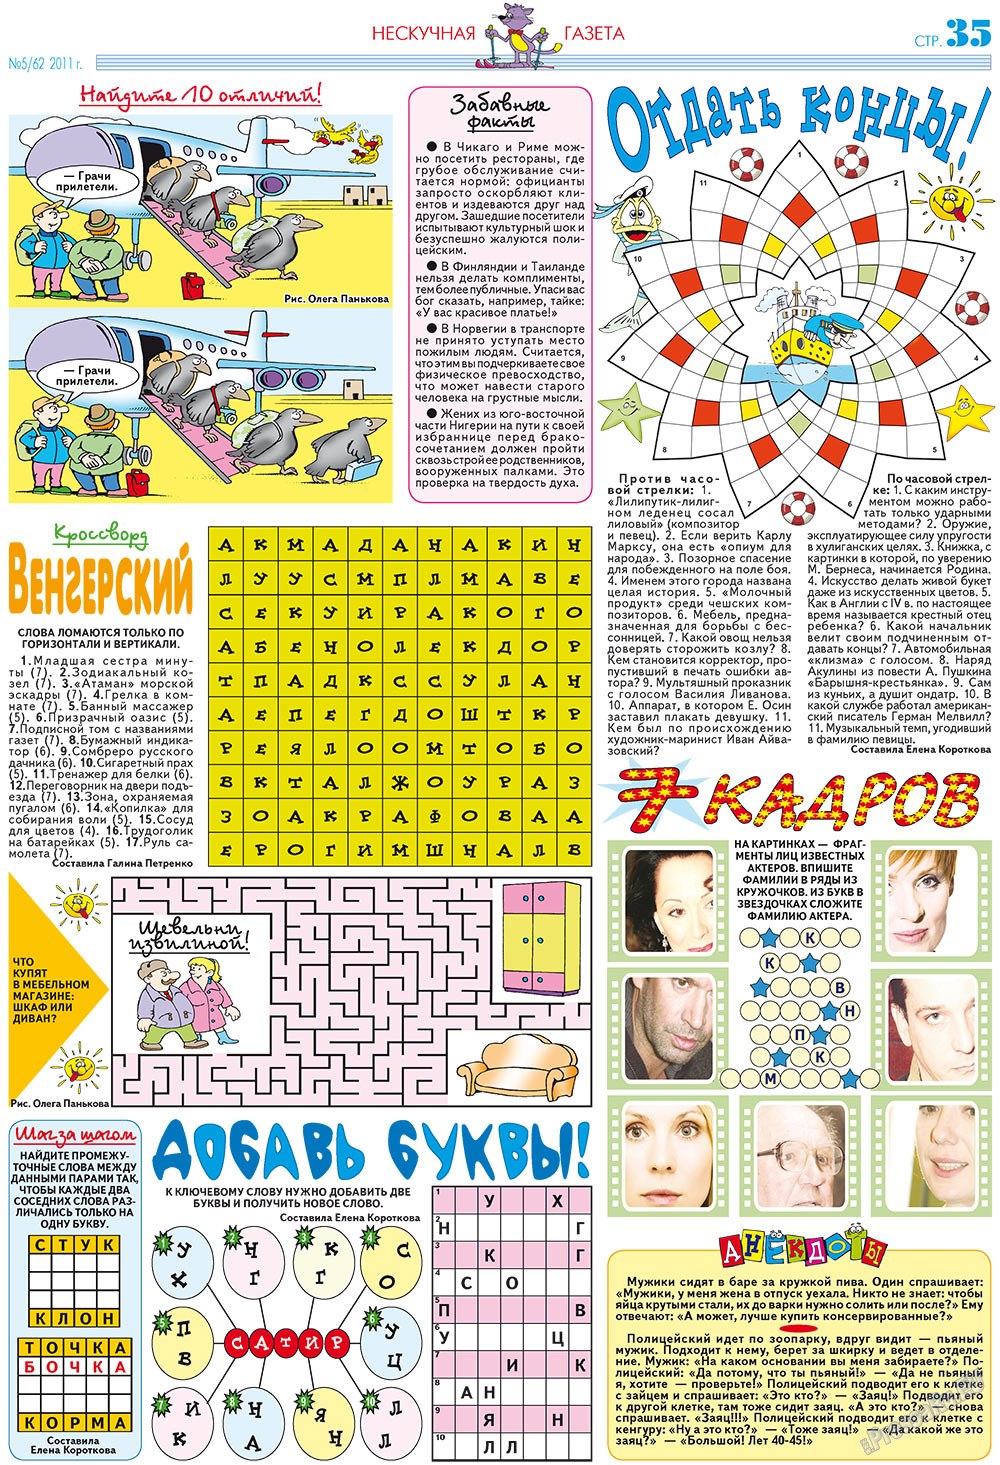 Нескучная газета (журнал). 2011 год, номер 5, стр. 31